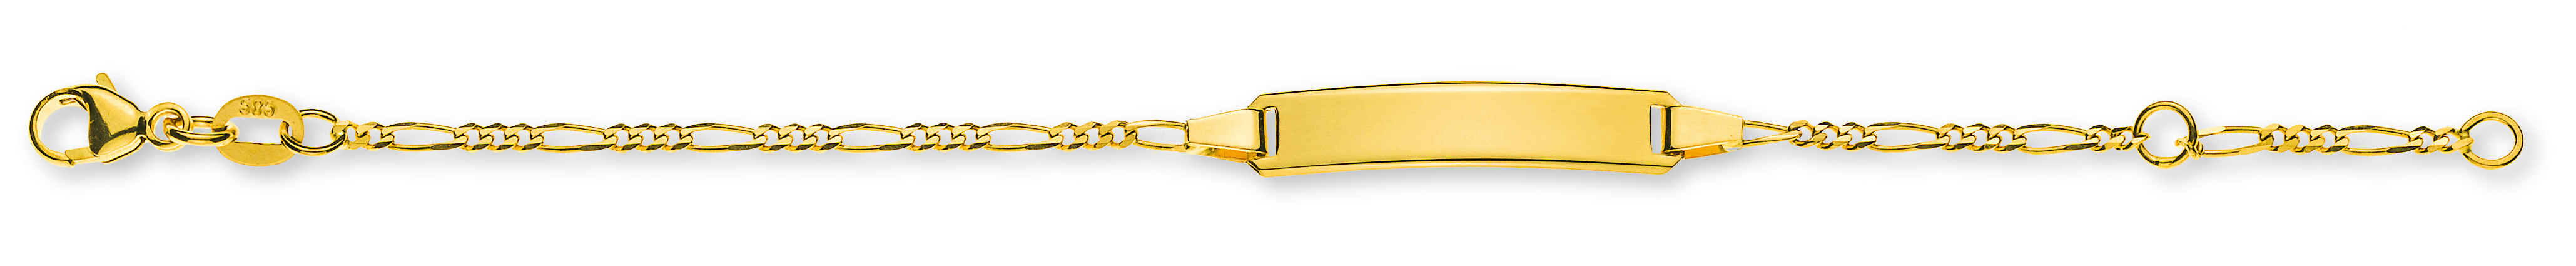 AURONOS Élégance ID-Bracelet or jaune 14k Chaîne Figaro 14cm